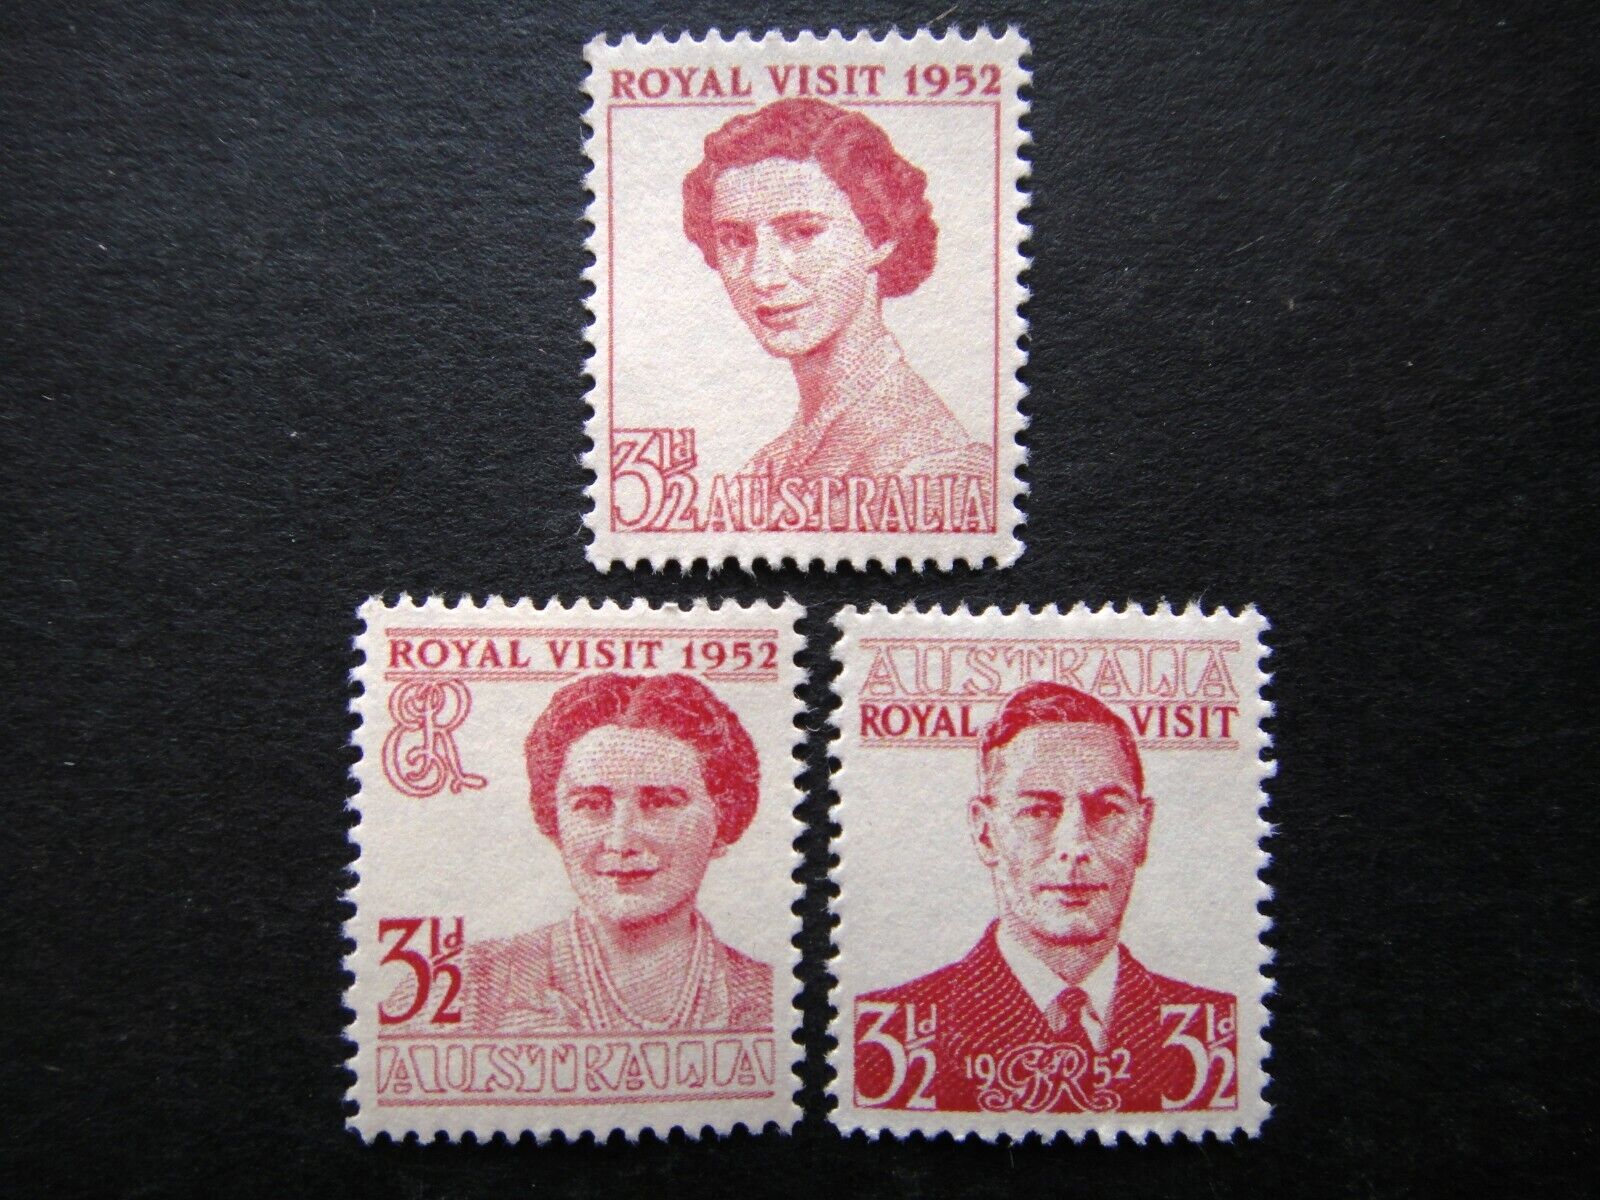 AUSTRALIA 1952 Stamps MNH Unissued 1952 Cancelled Royal Visit Se